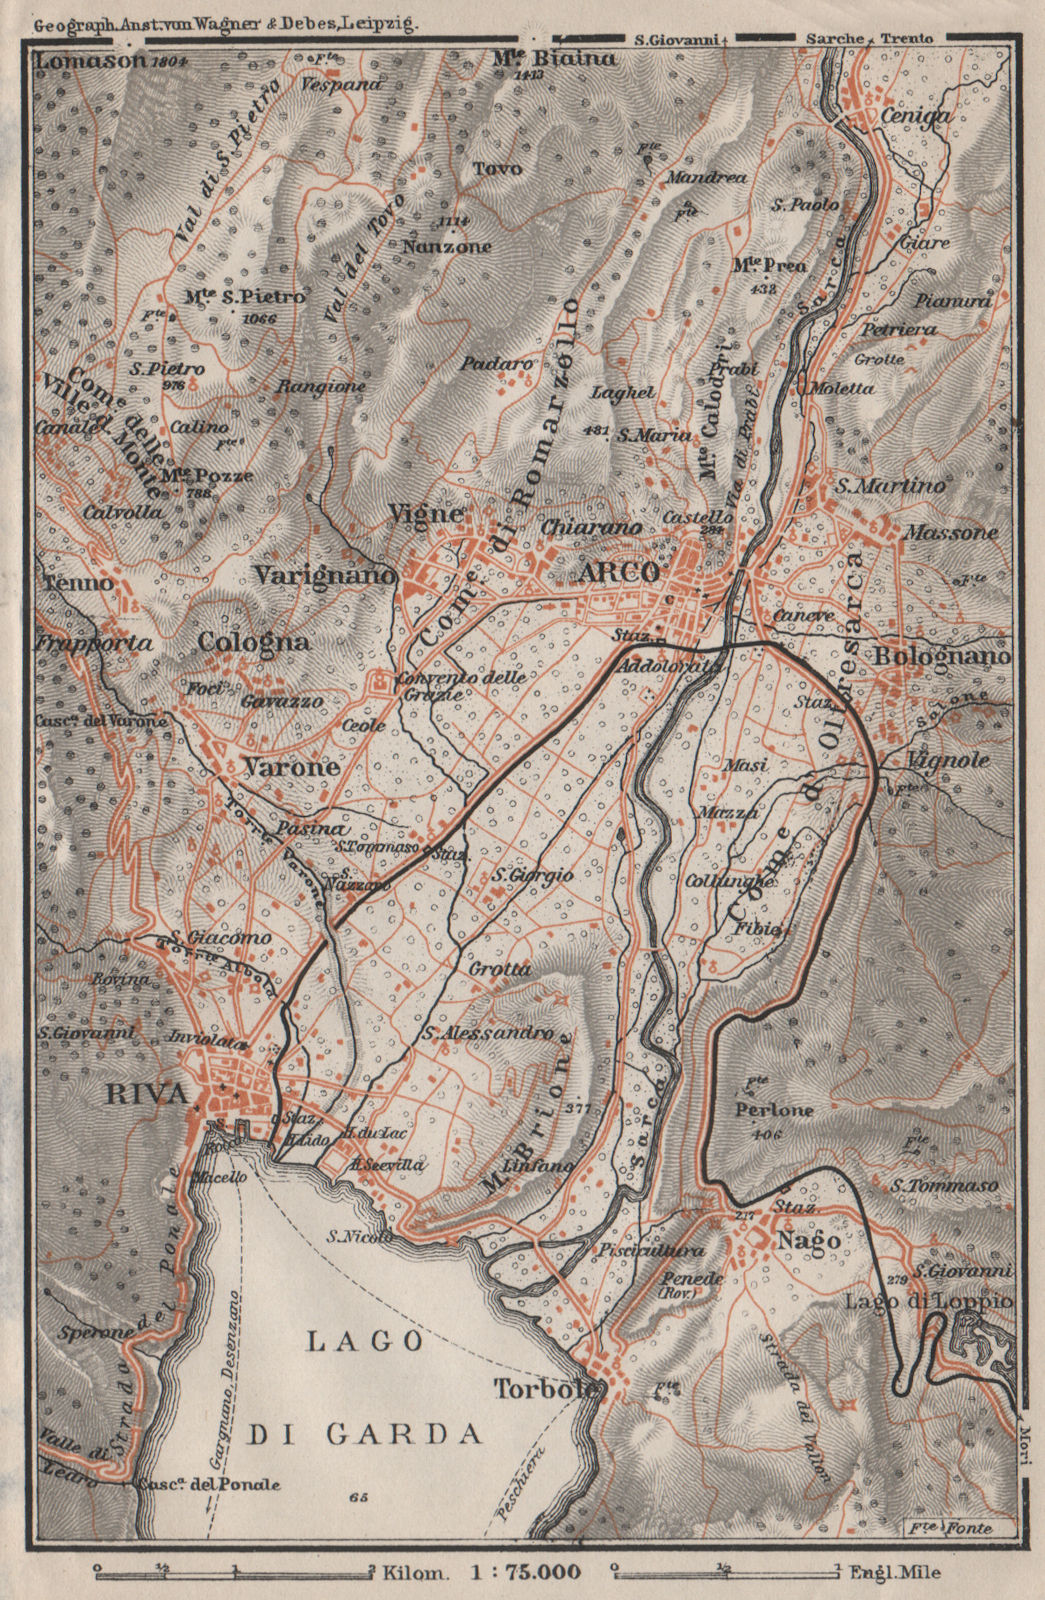 ARCO & RIVA DEL GARDA environs. Trento, Italy Italia. Bolognano mappa 1906